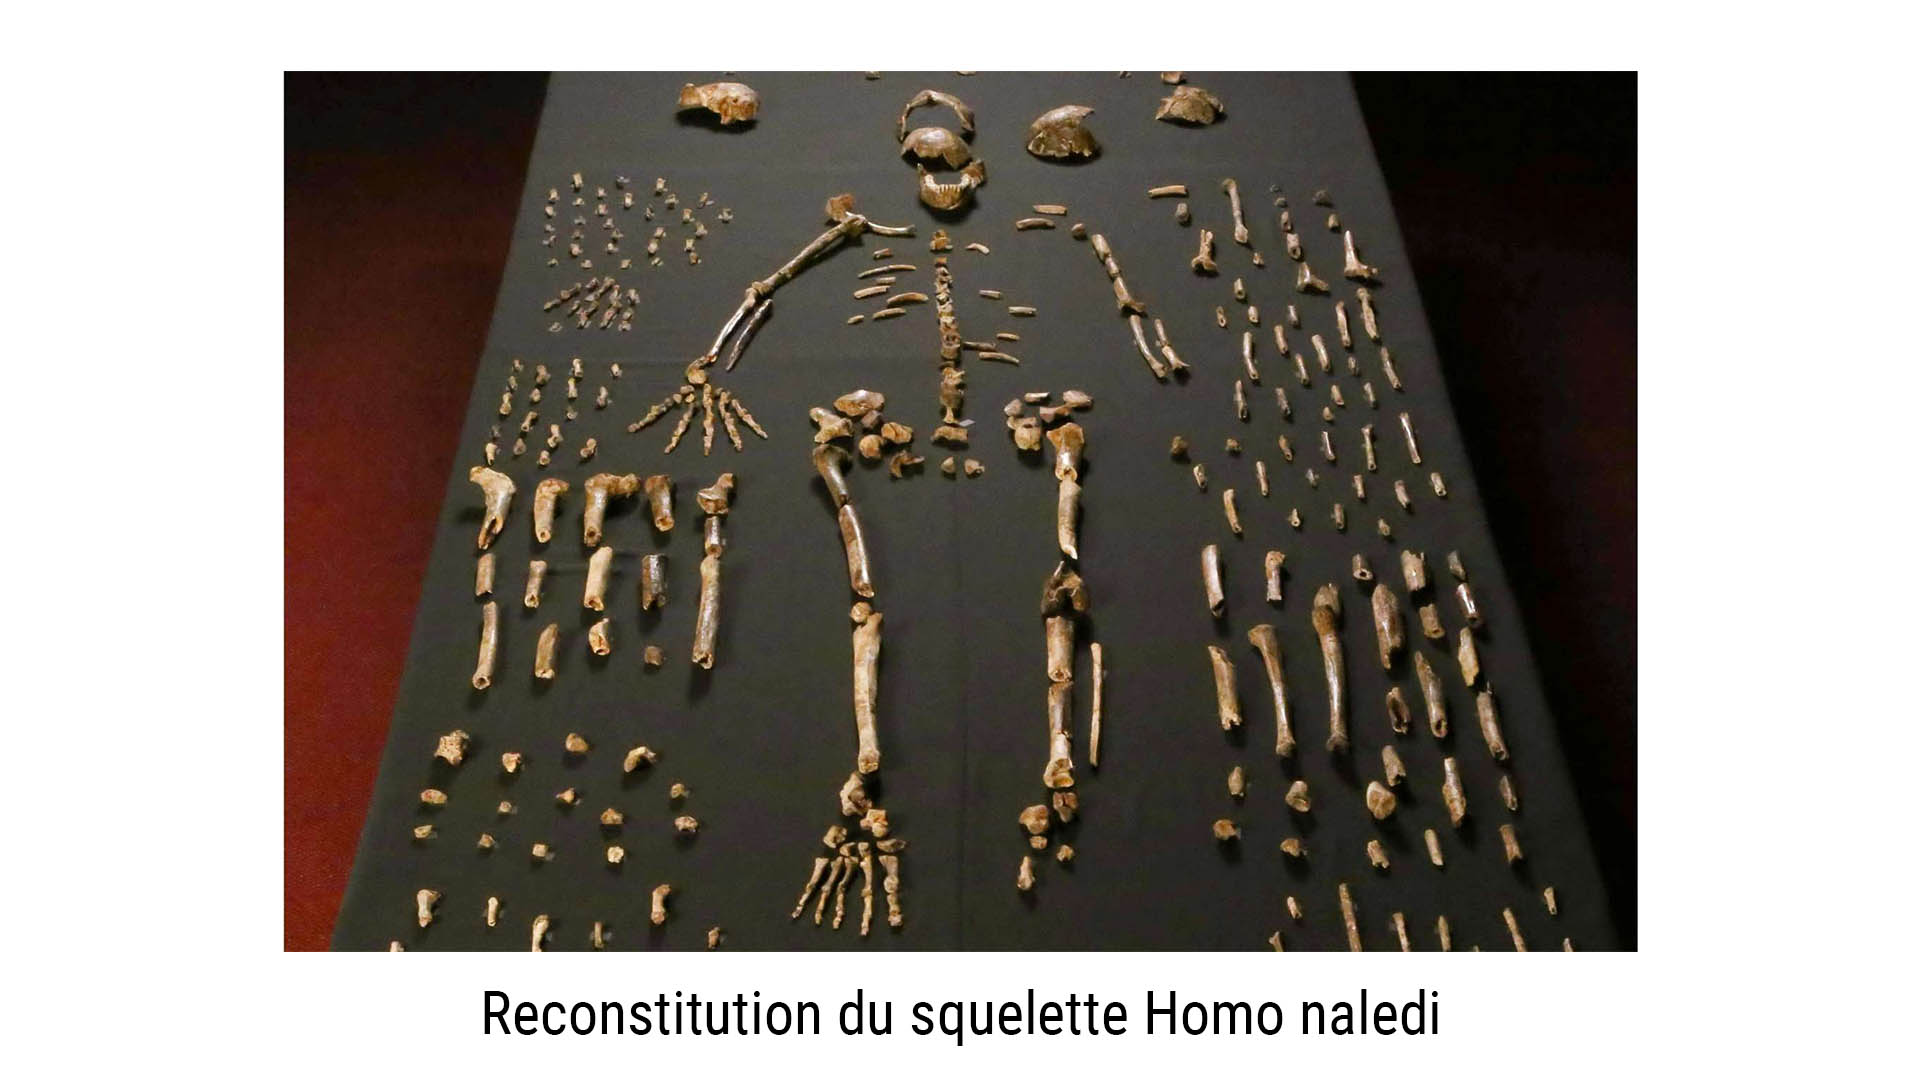 Homo naledi